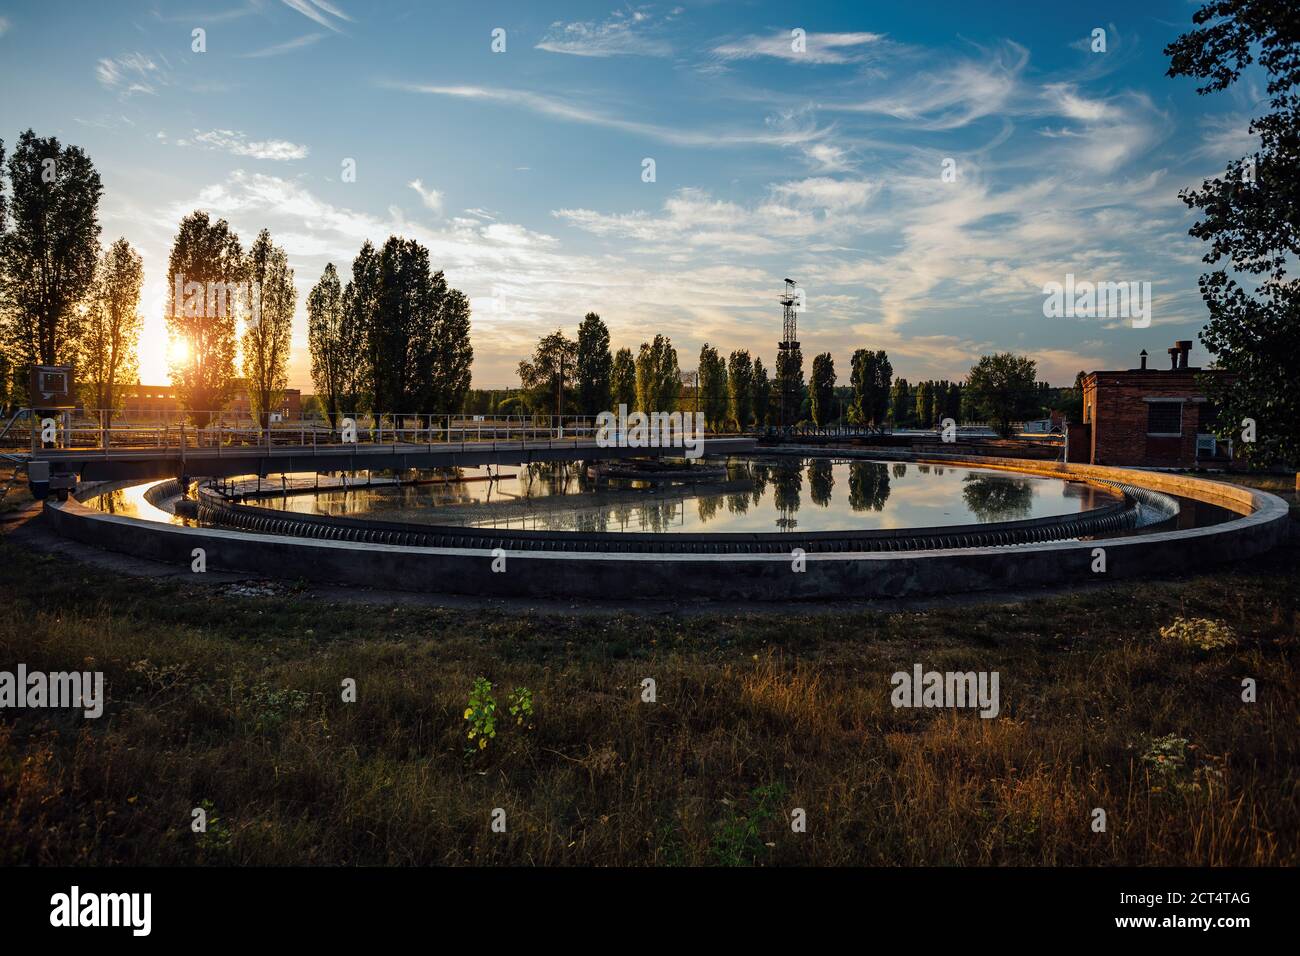 Modern sewage treatment plant. Round wastewater purification tank at sunset Stock Photo